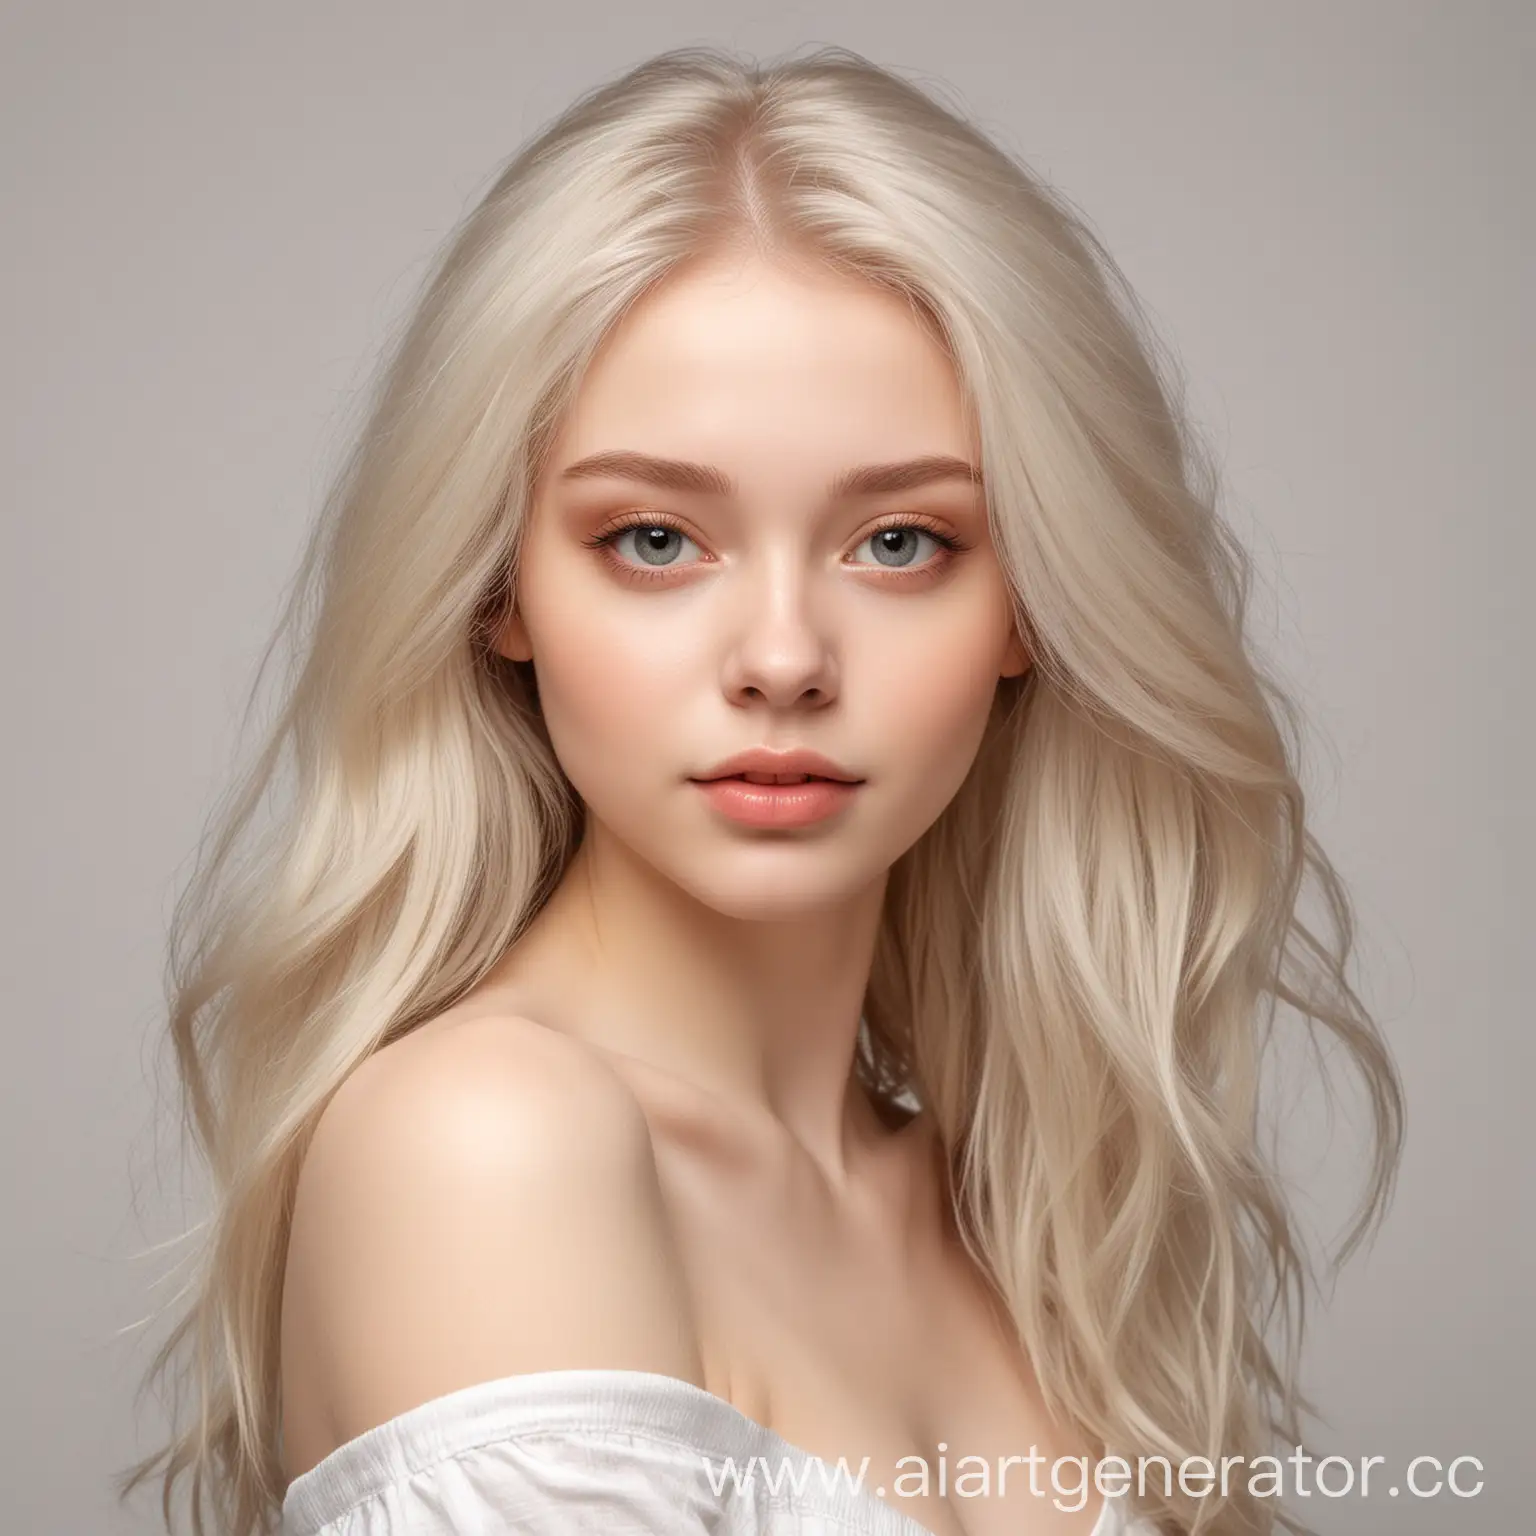 девушка с шикарными развиваюшимися волосами и бледной кожей на бесцветном фоне,  изображена по пояс